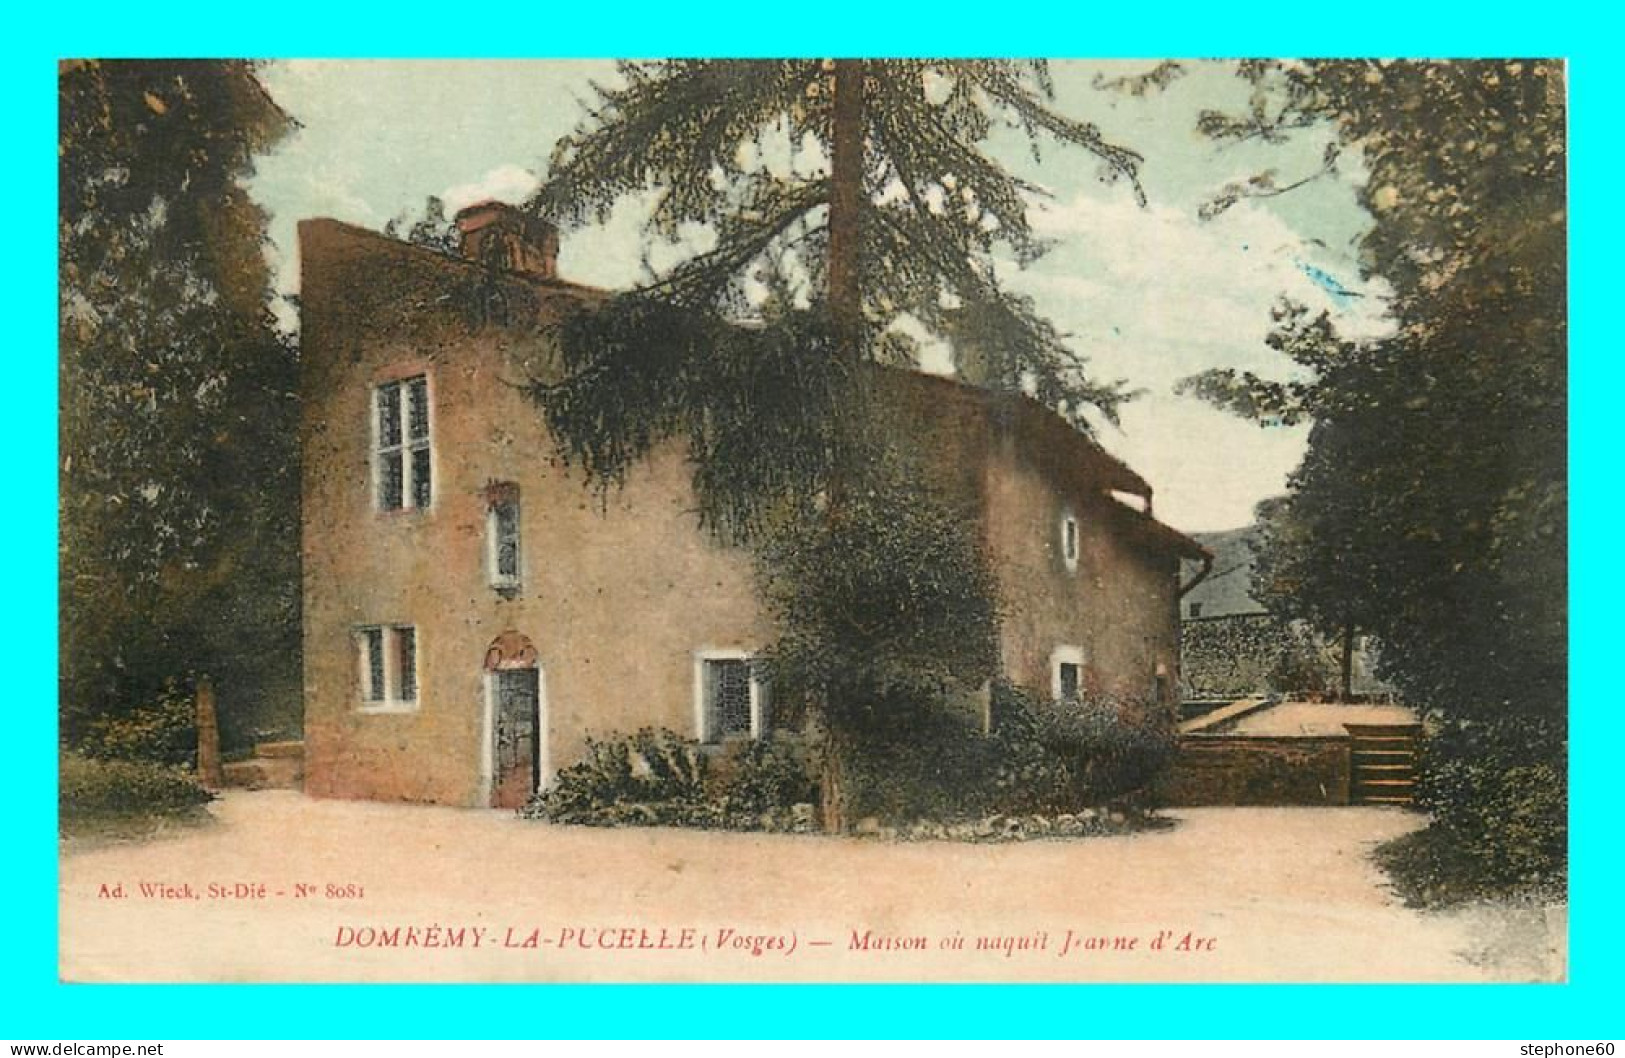 A881 / 057 88 - DOMREMY LA PUCELLE Maison Ou Naquit Jeanne D'Arc - Domremy La Pucelle